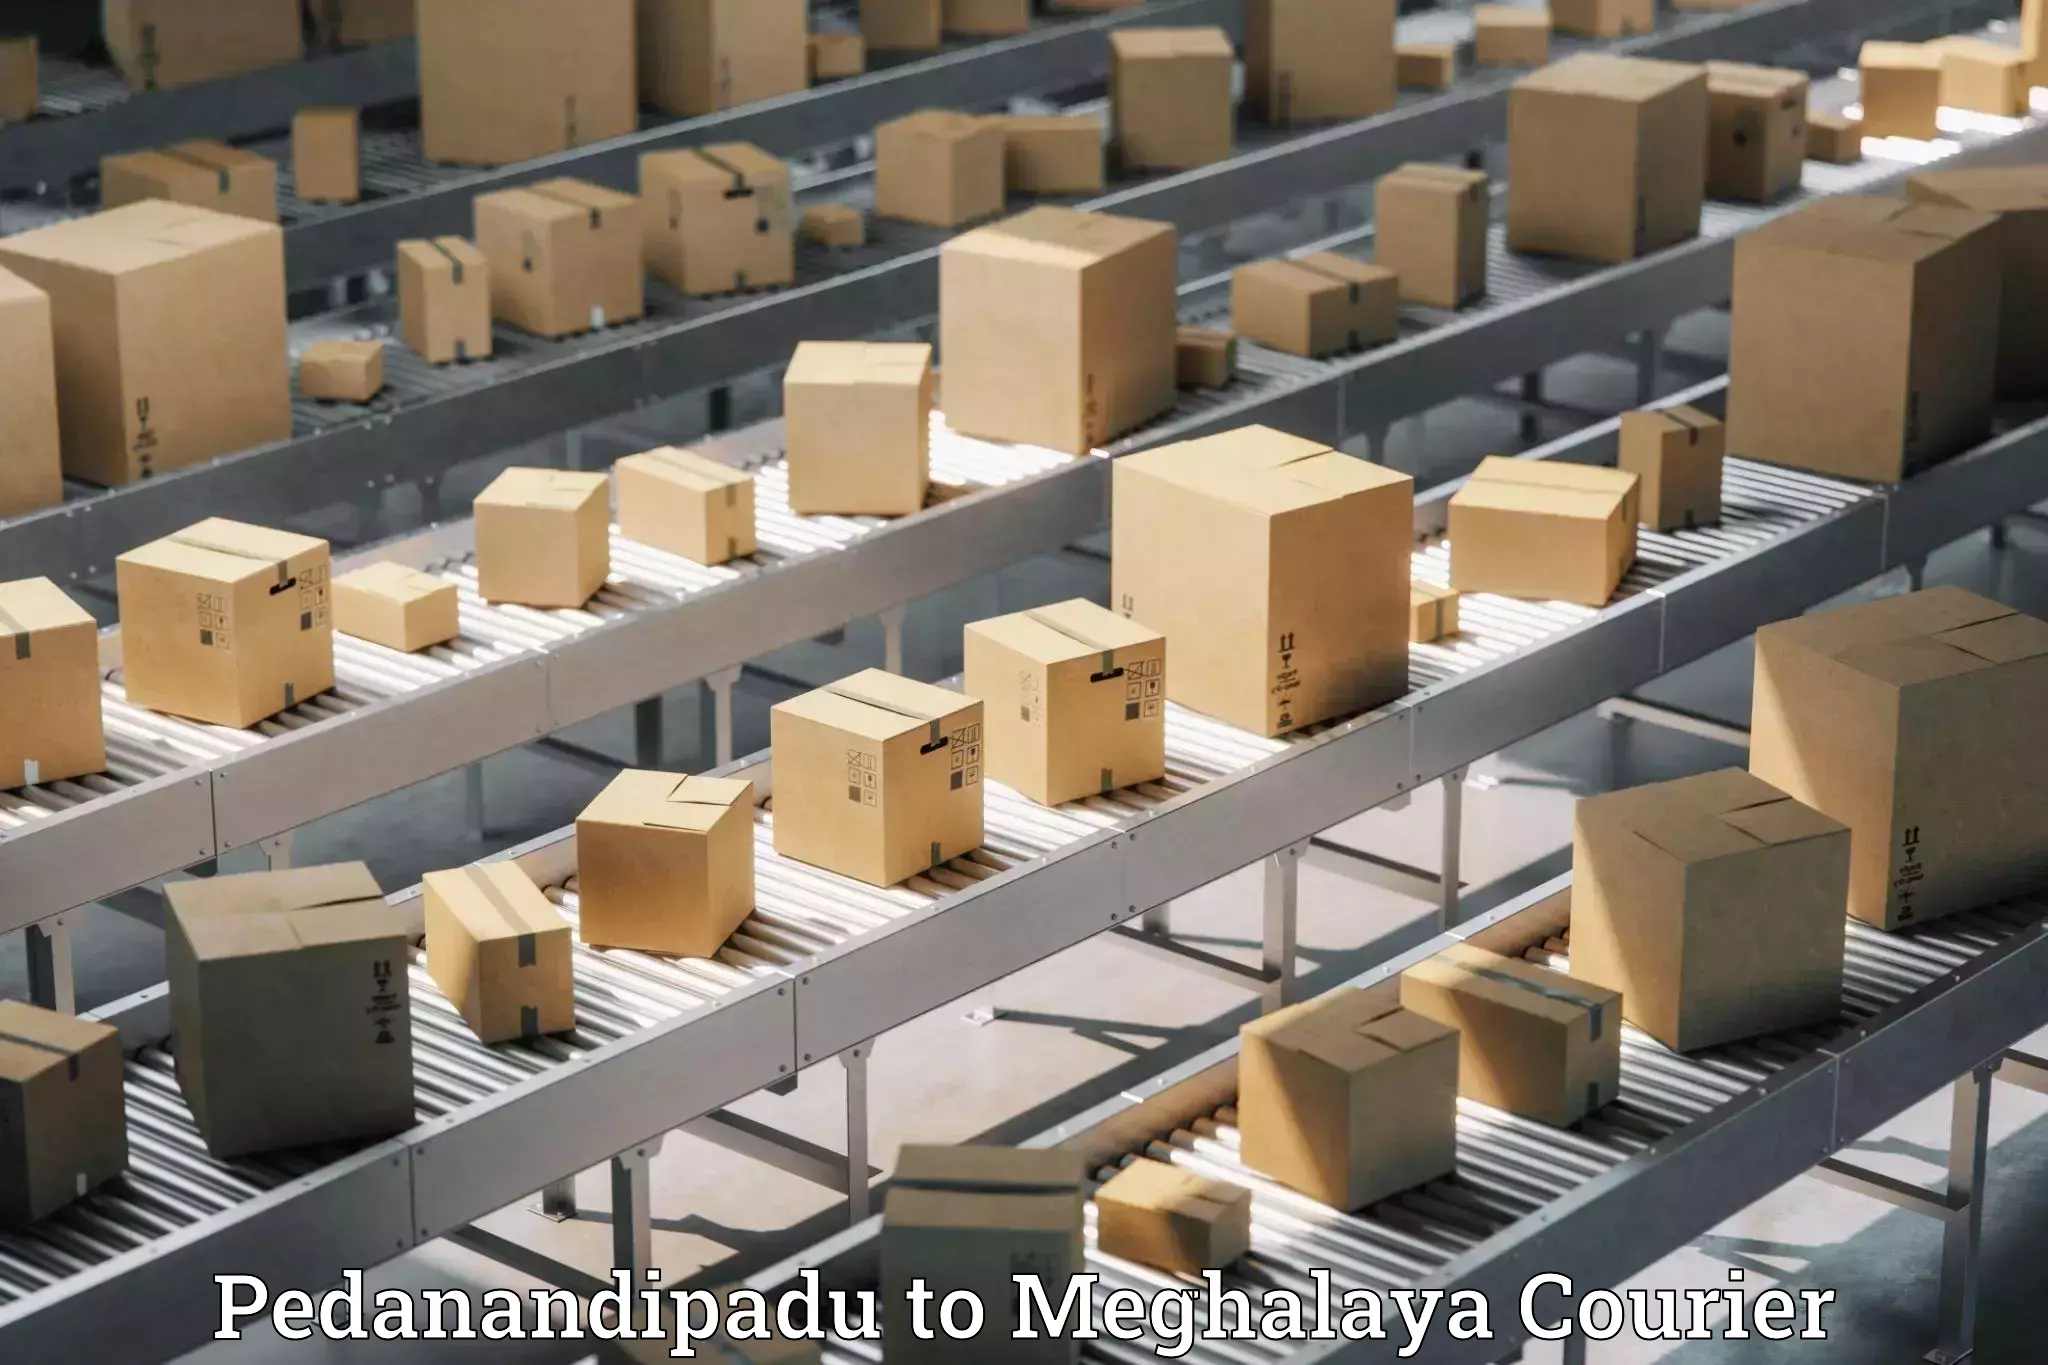 Fast-track shipping solutions Pedanandipadu to Meghalaya